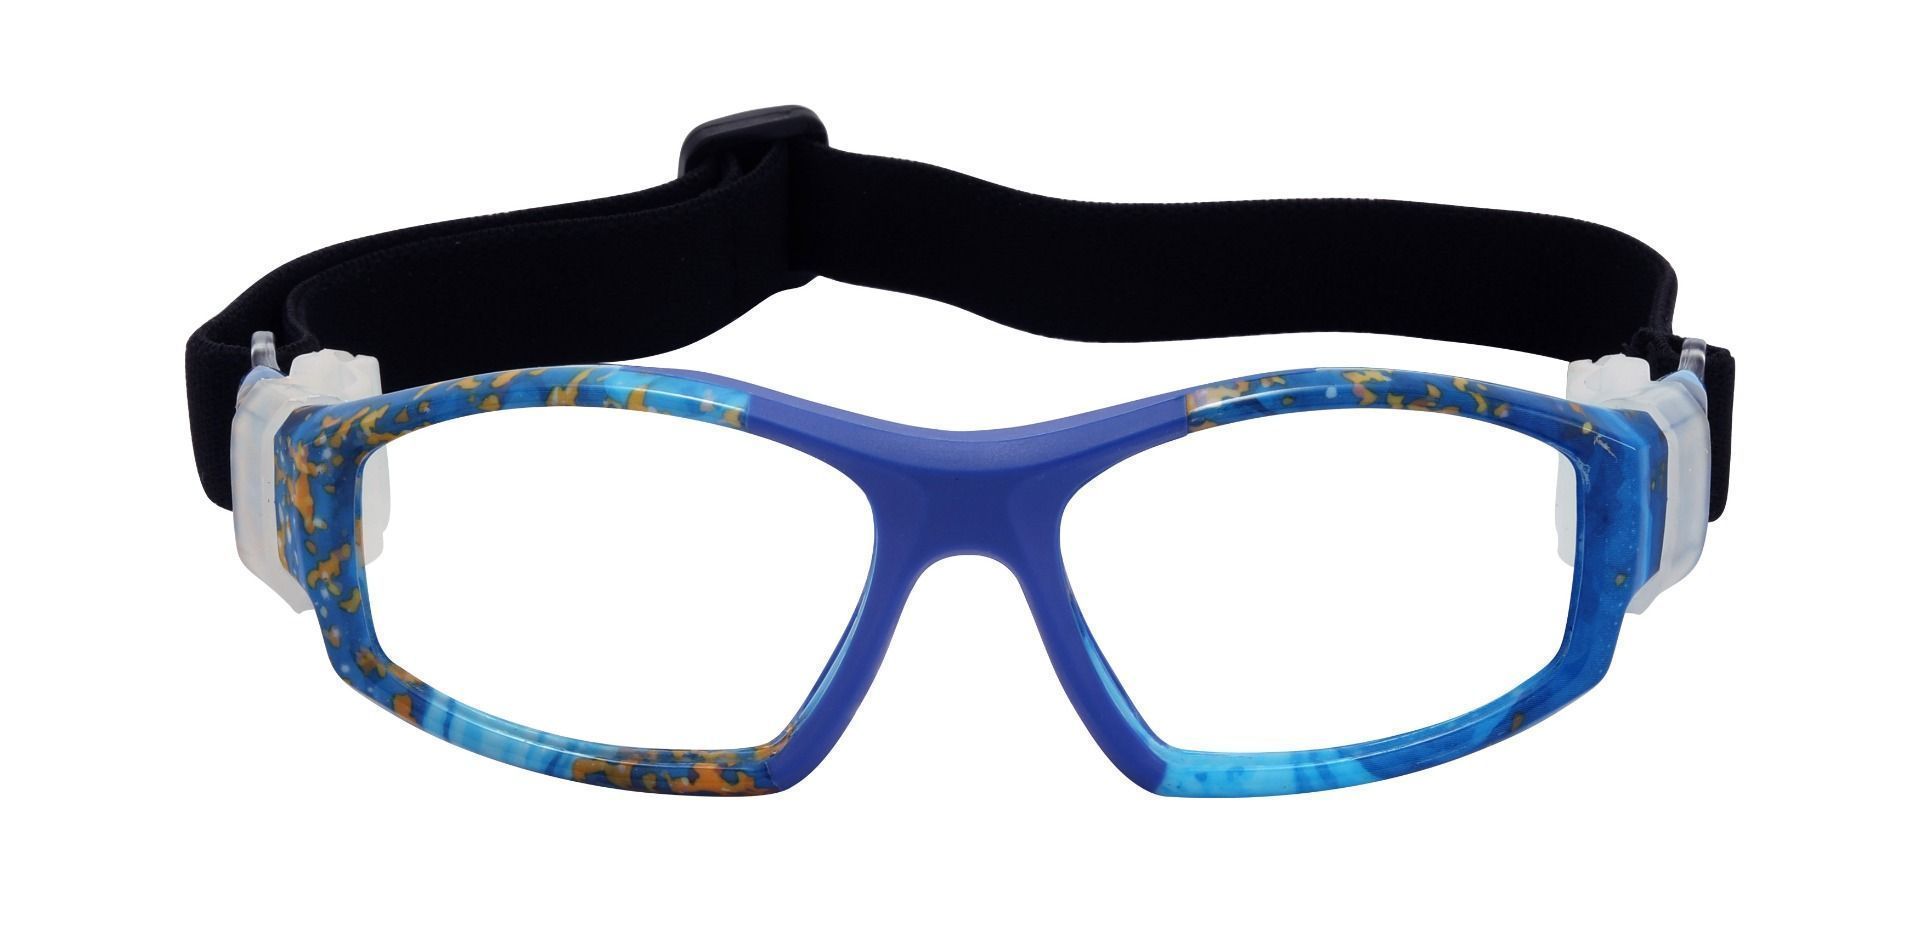 Warwick Sports Goggles Prescription Glasses - Blue